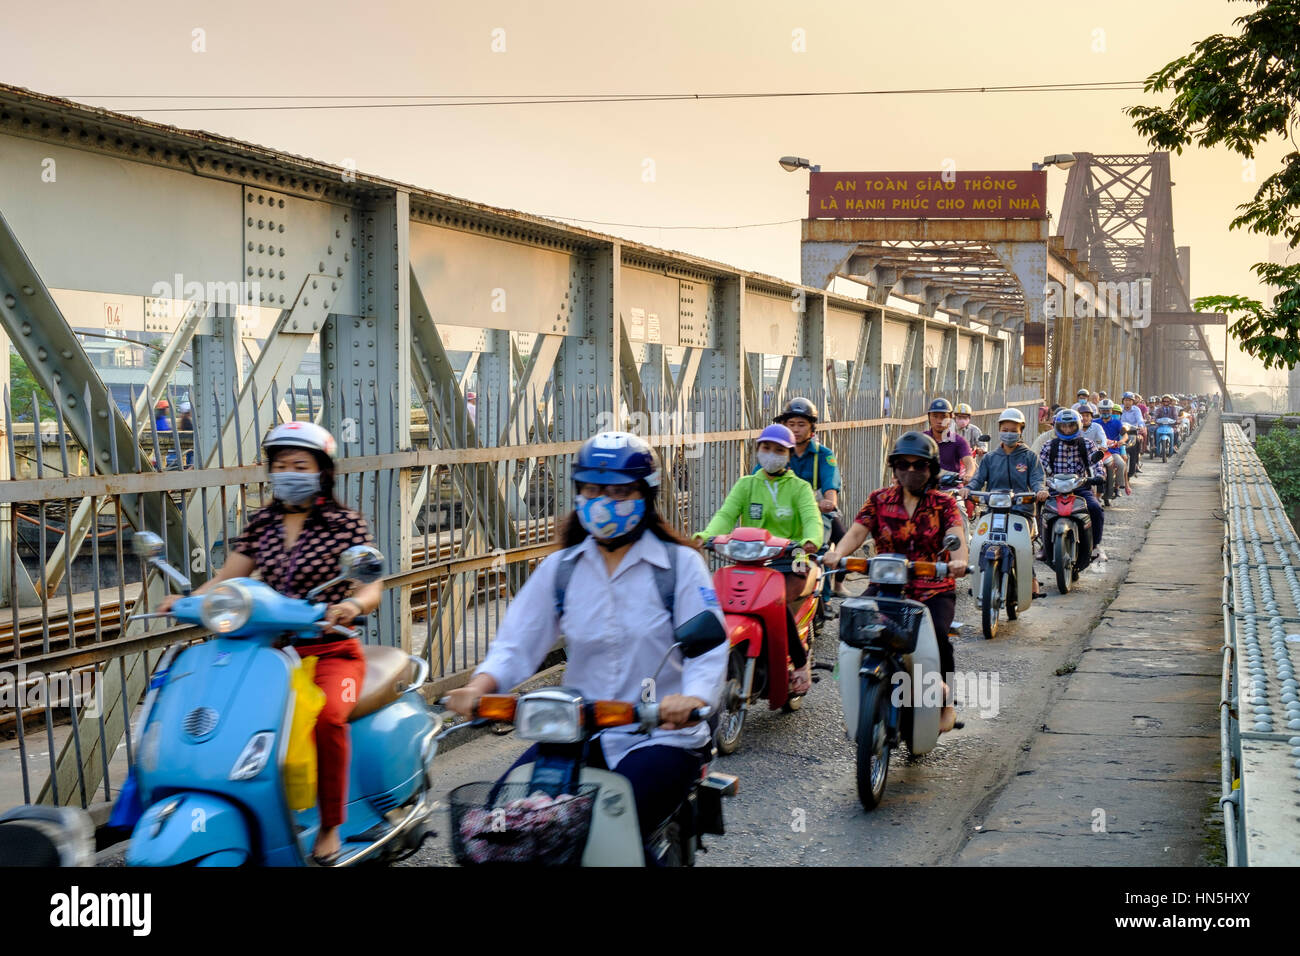 Trafic de banlieue dense sur la passerelle piétonne du pont en porte-à-faux de long bien, avec des cavaliers utilisant des masques de visage, Hanoi, Vietnam Banque D'Images